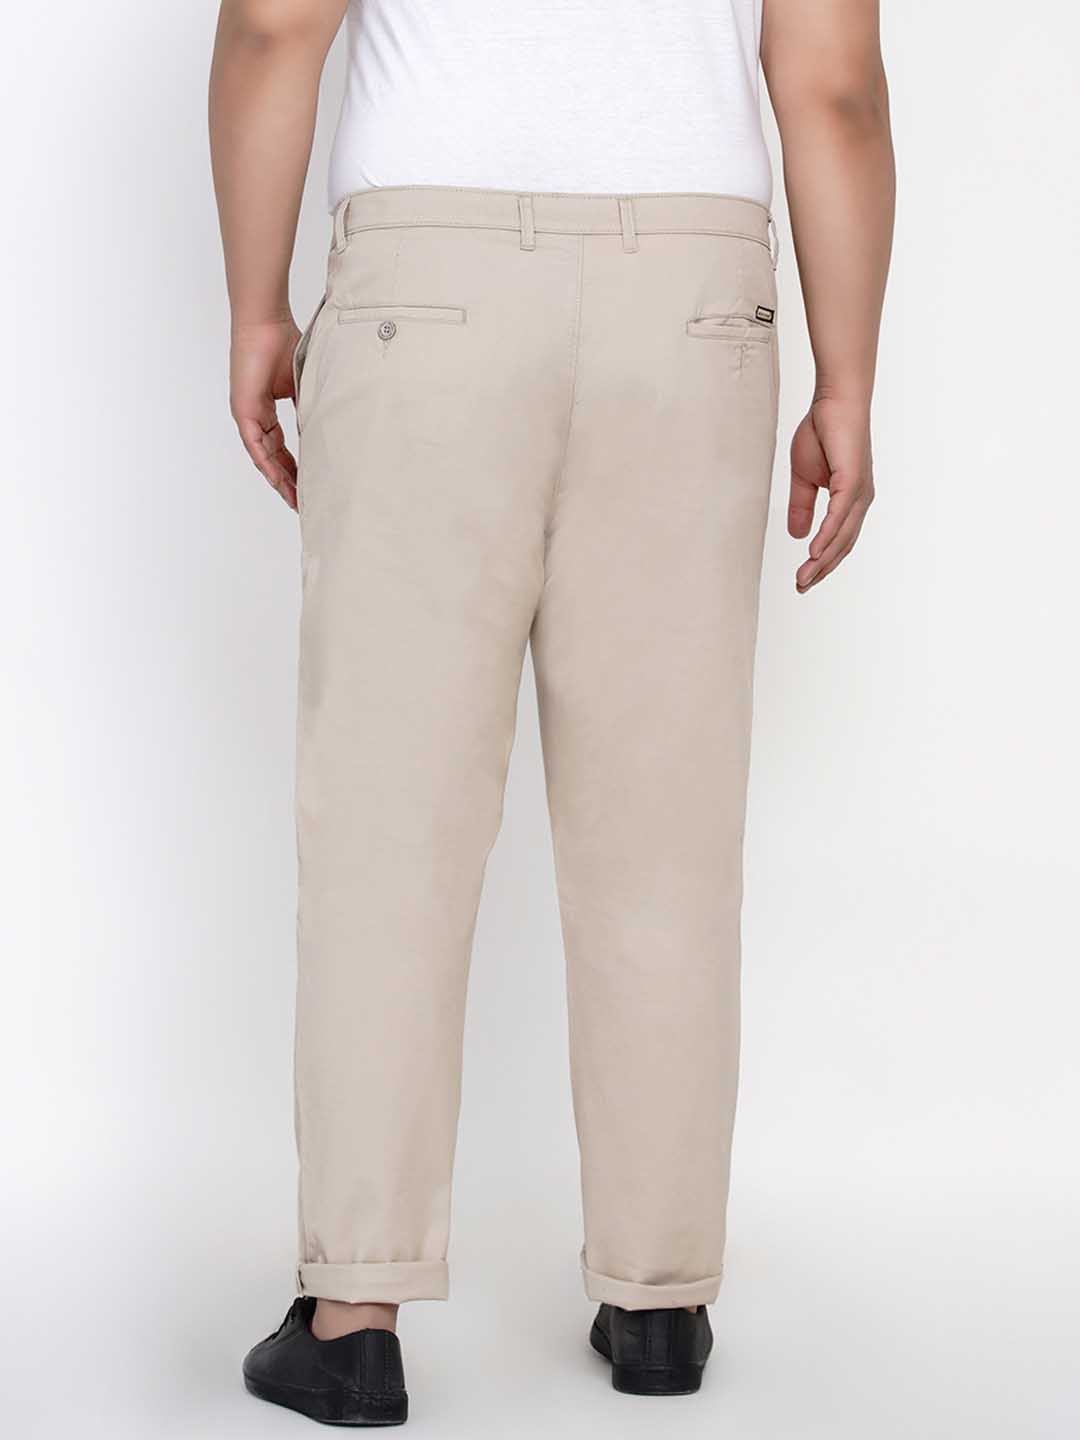 bottomwear/trousers/JPTR2195C/jptr2195c-4.jpg